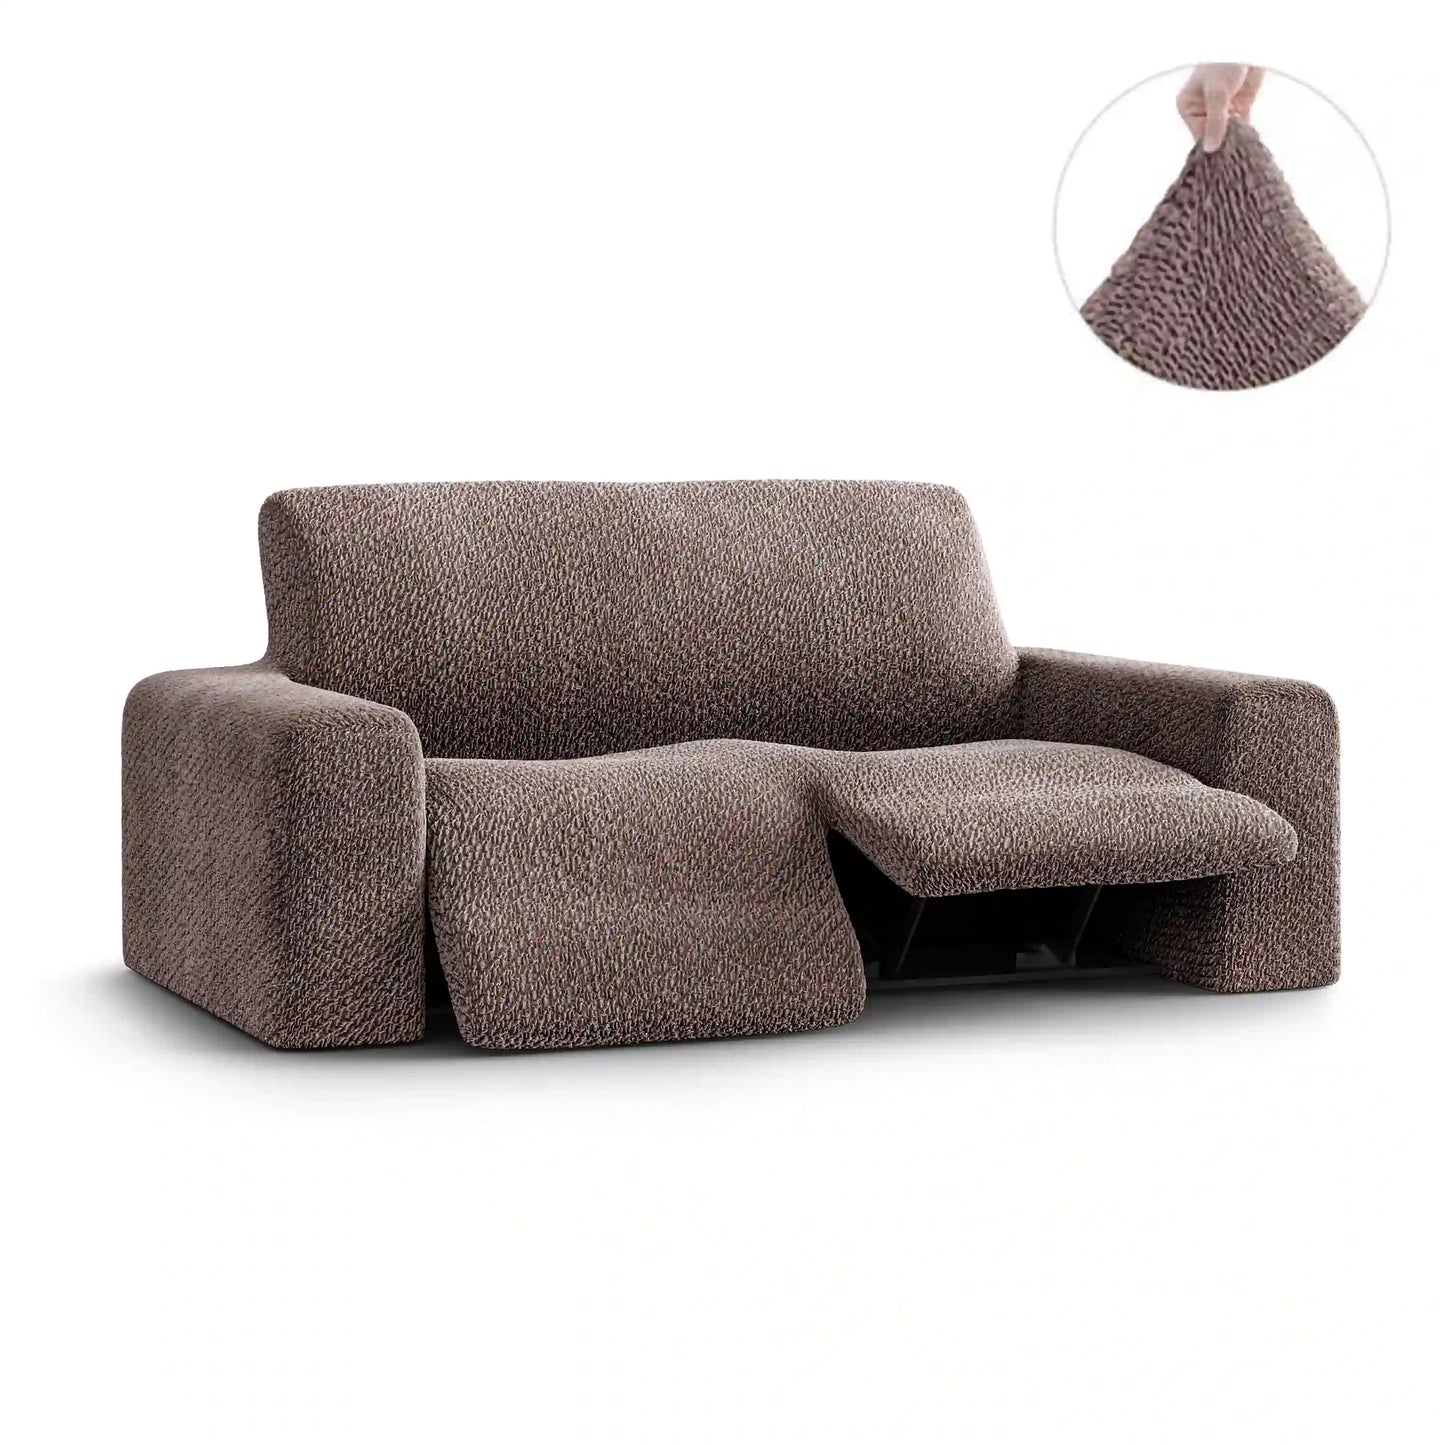 2 Seater Recliner Sofa Cover - Brown, Velvet